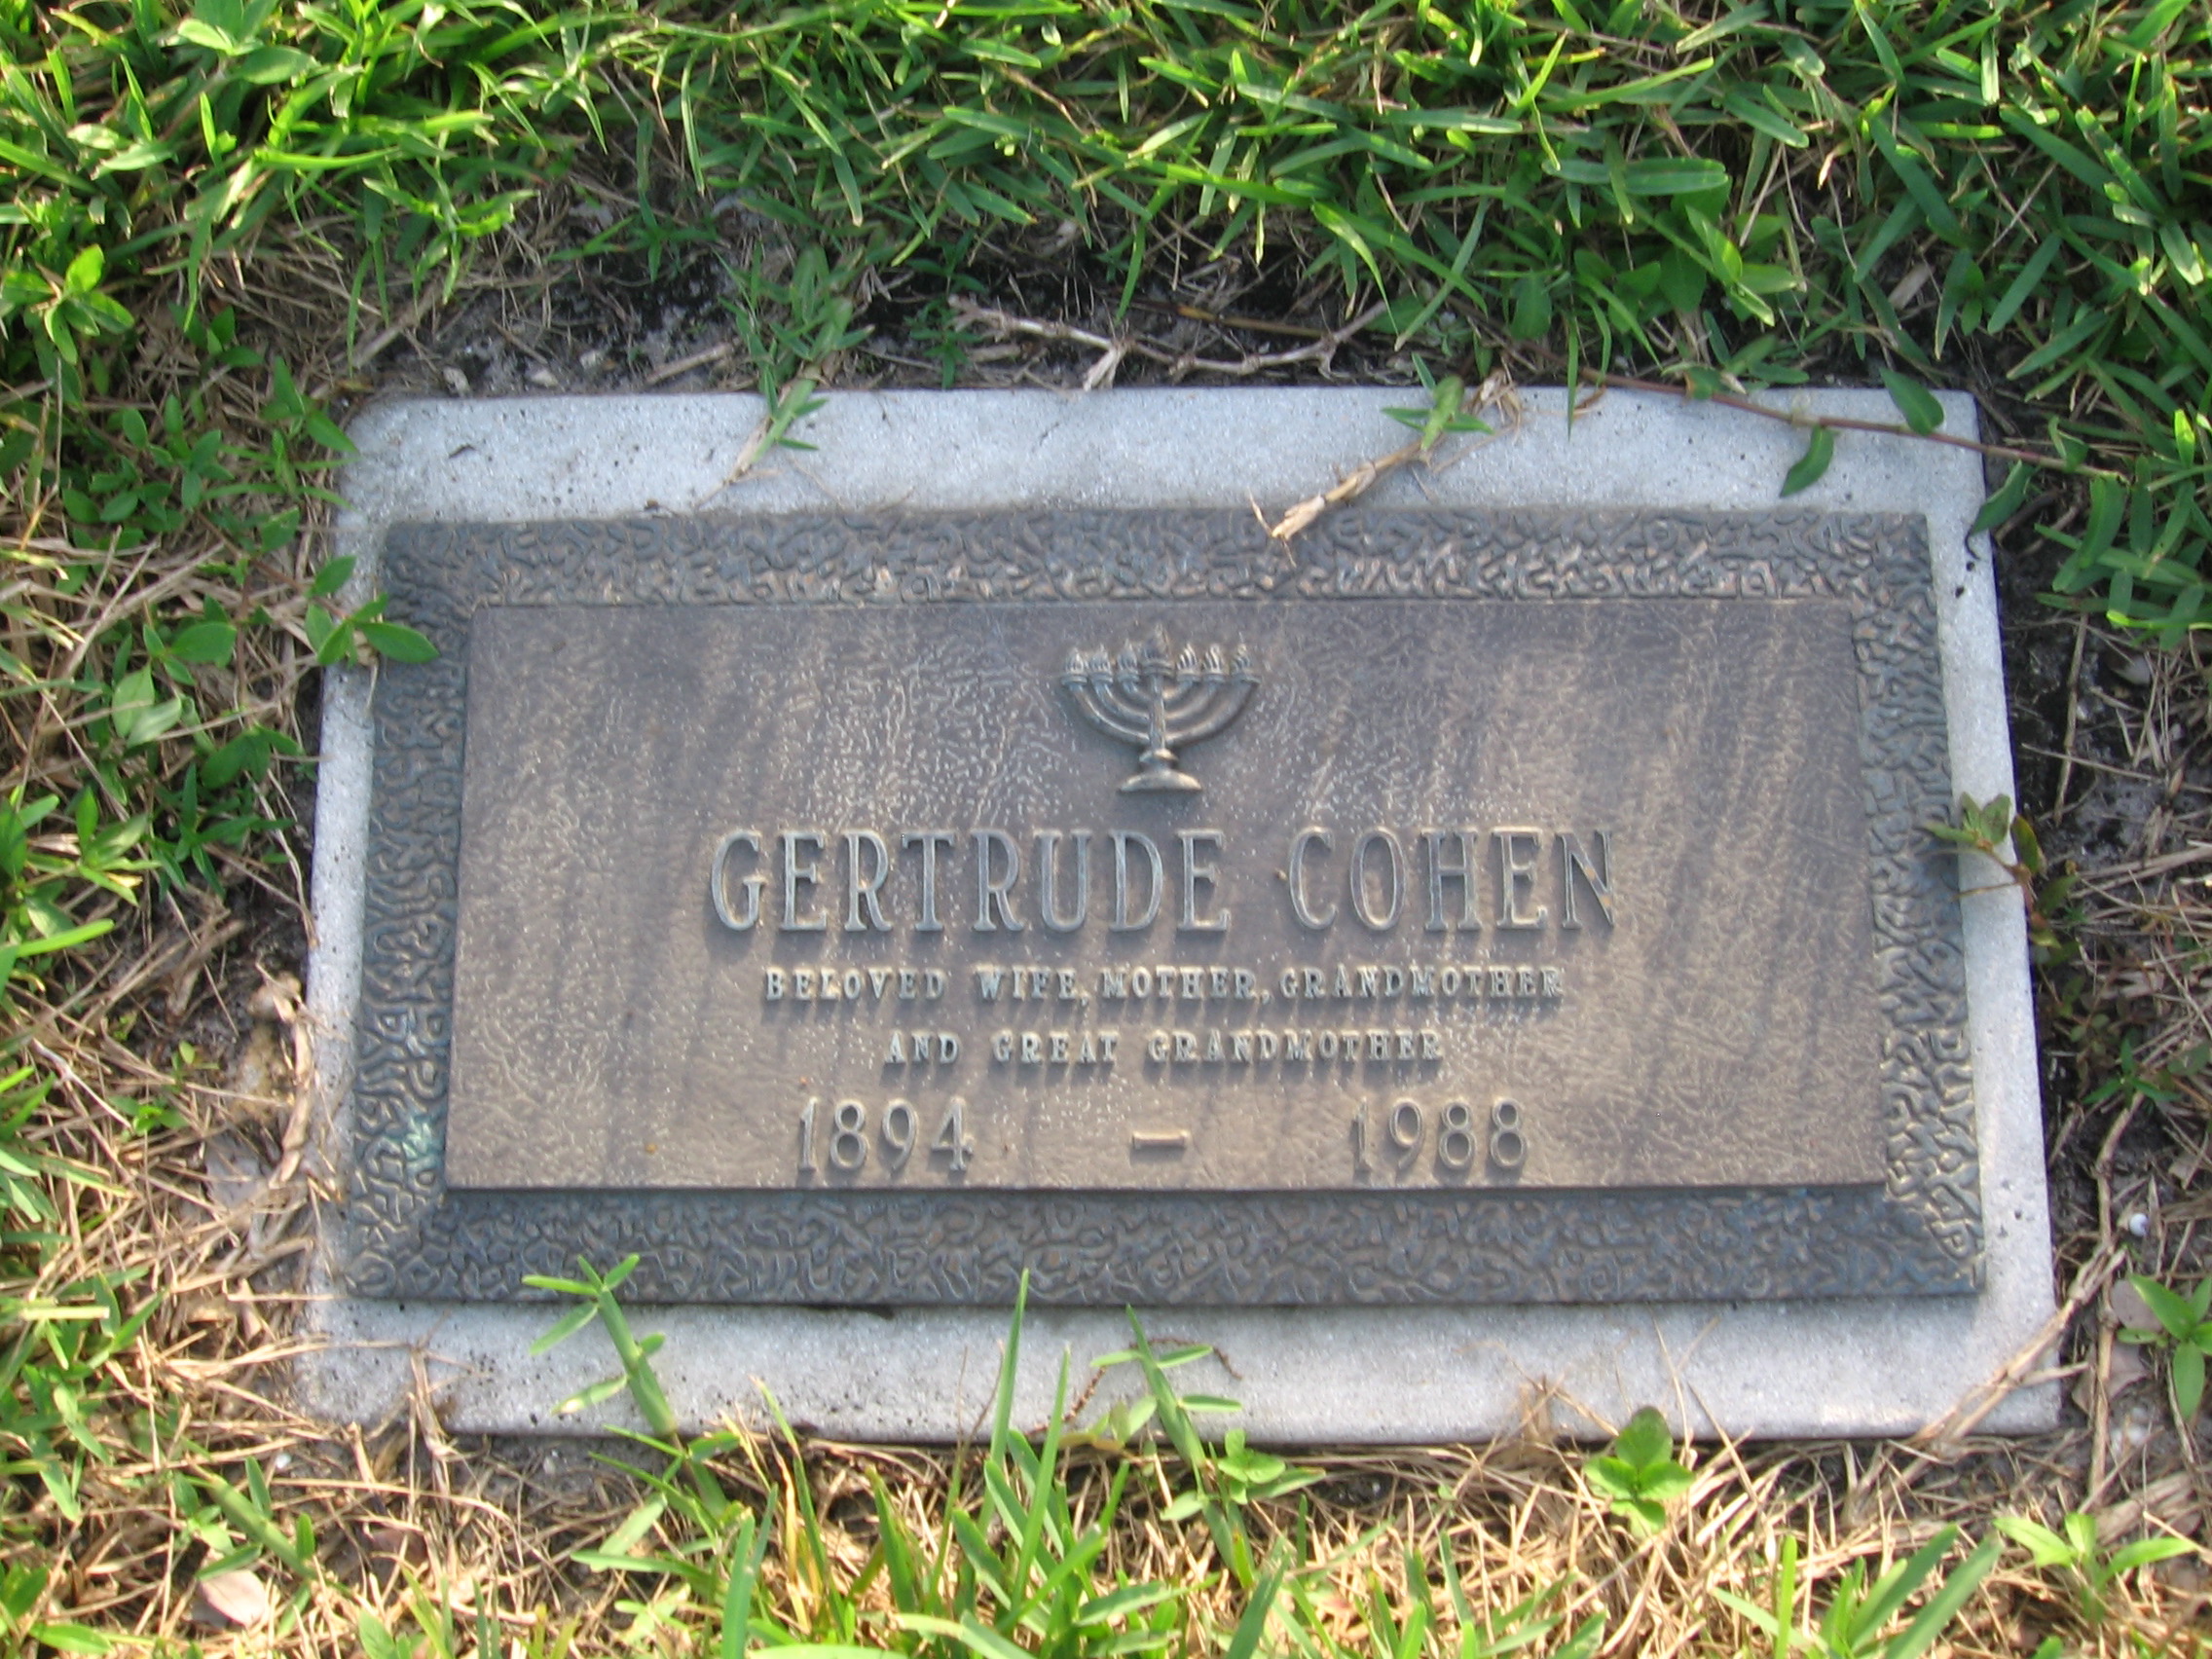 Gertrude Cohen